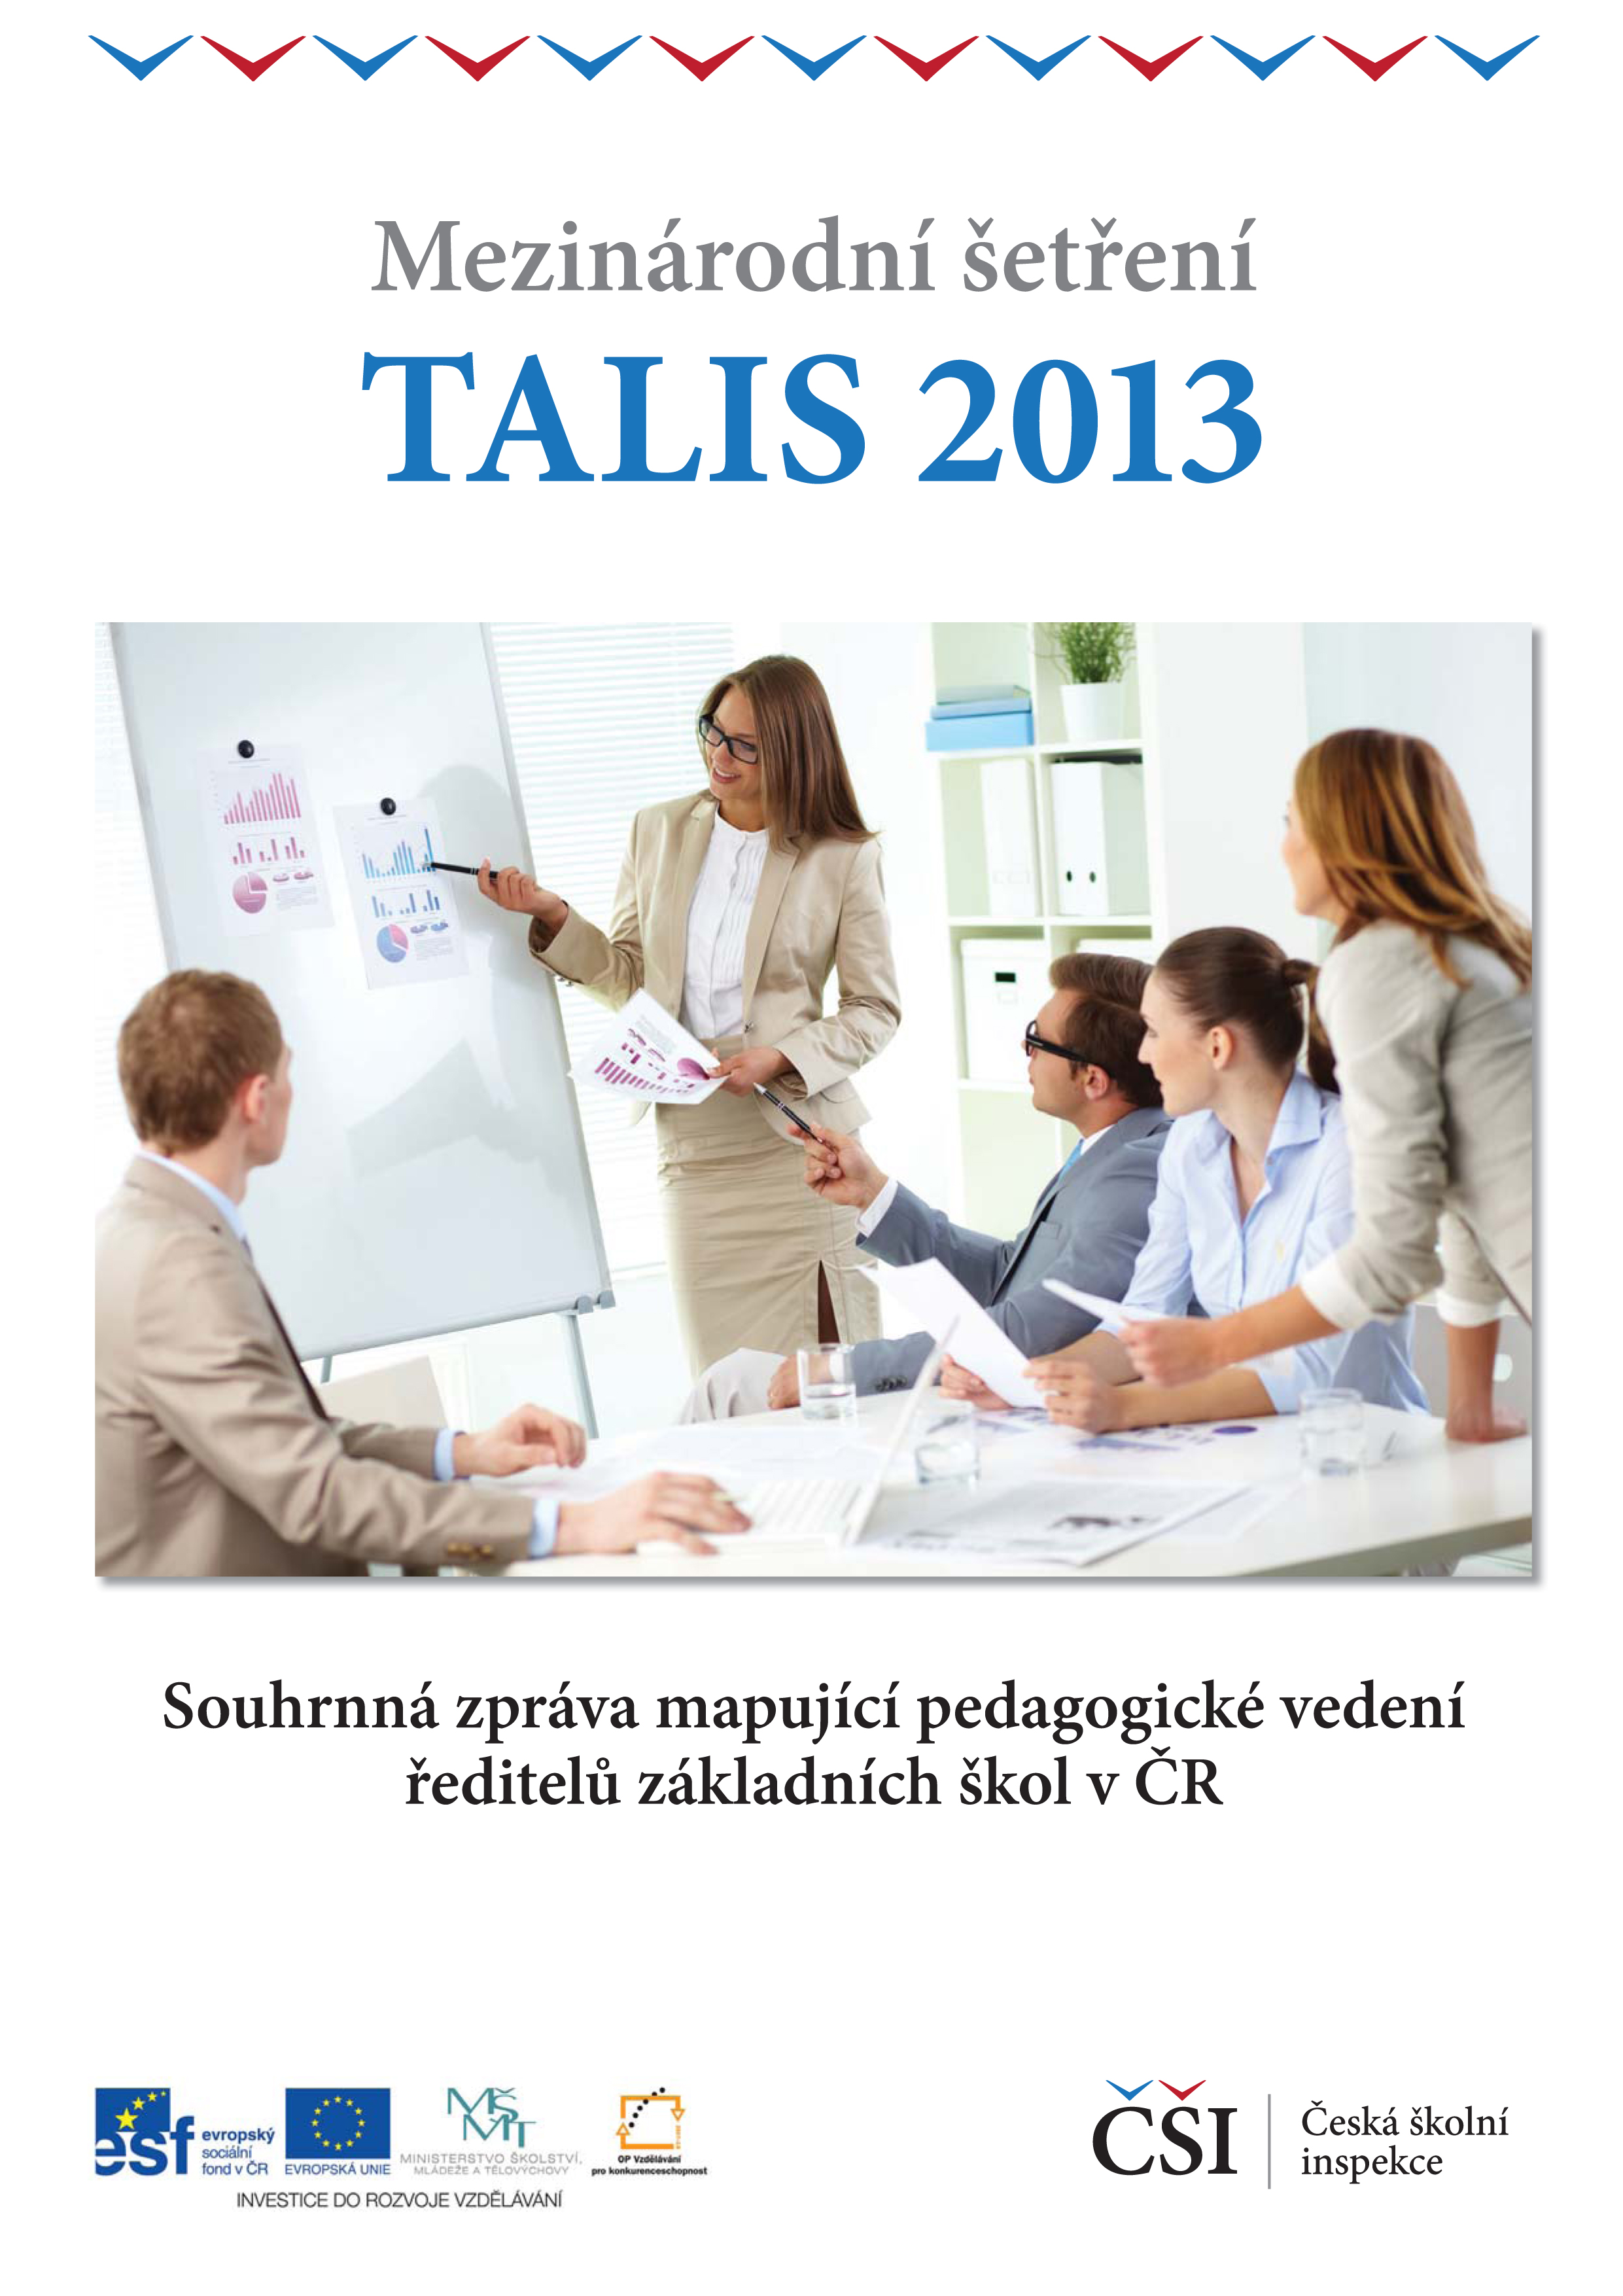 TALIS 2013: Souhrnná zpráva mapující pedagogické vedení ředitelů základních škol v ČR